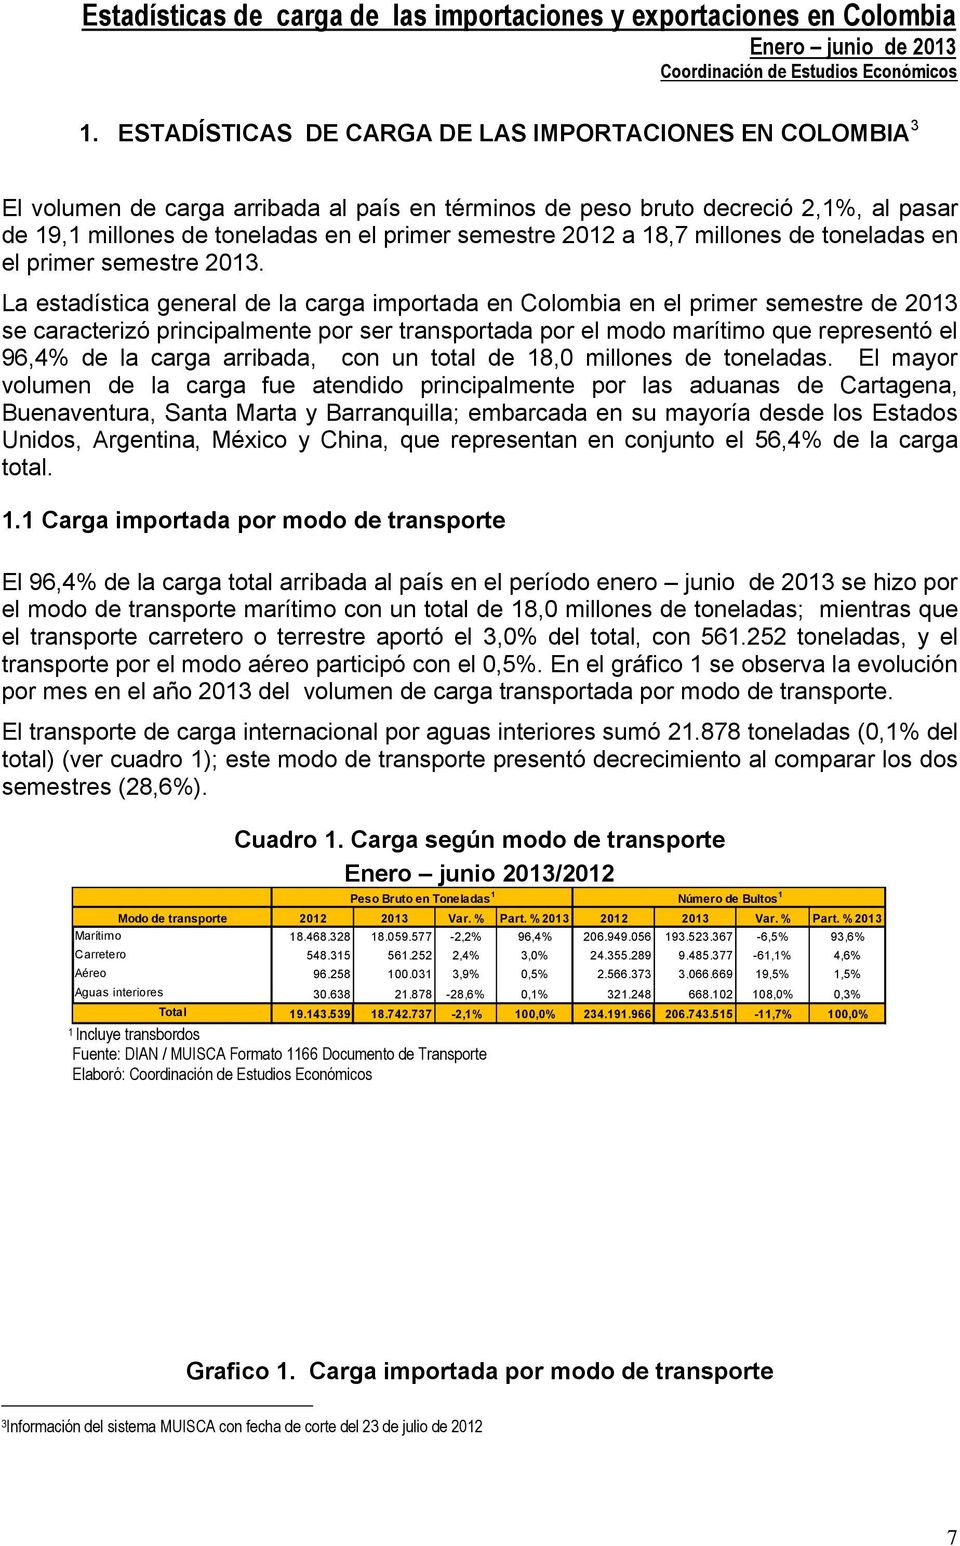 La estadística general de la carga importada en Colombia en el primer semestre de 203 se caracterizó principalmente por ser transportada por el modo marítimo que representó el 96,4% de la carga